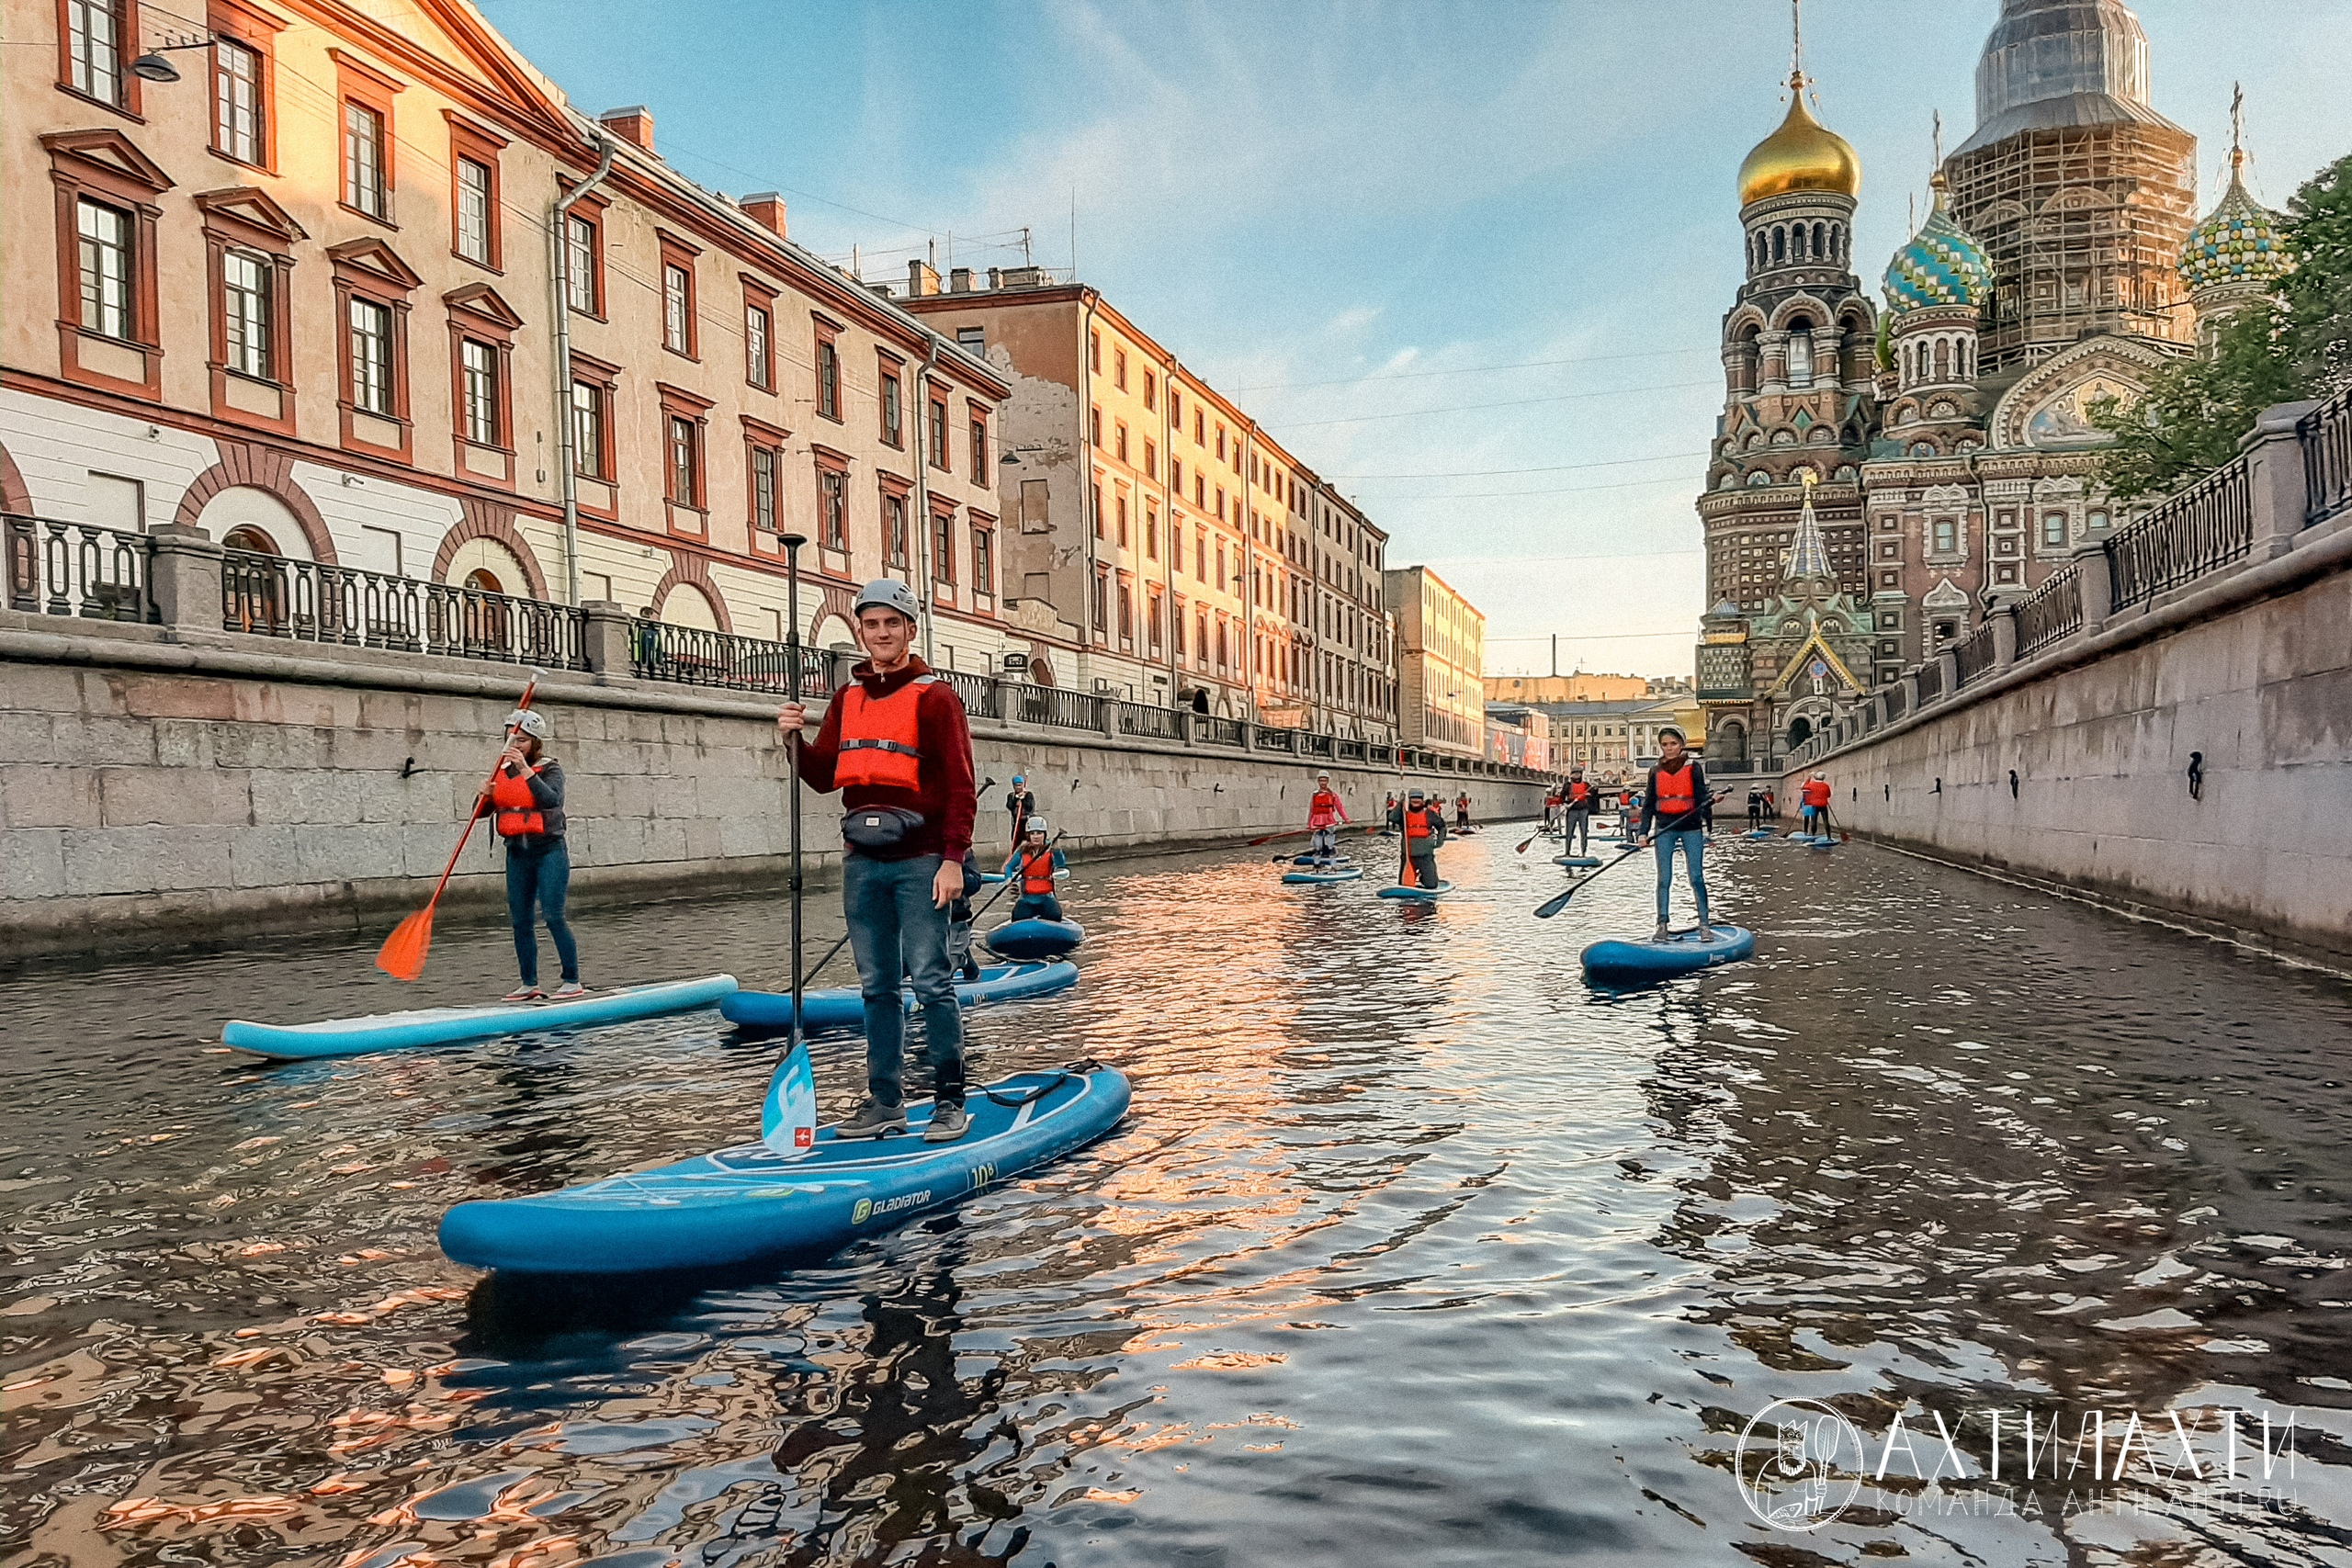 Остановиться в спб. САП борд СПБ прогулки. Sup прогулка Санкт-Петербург. САП серфинг по каналам в Санкт-Петербурге.